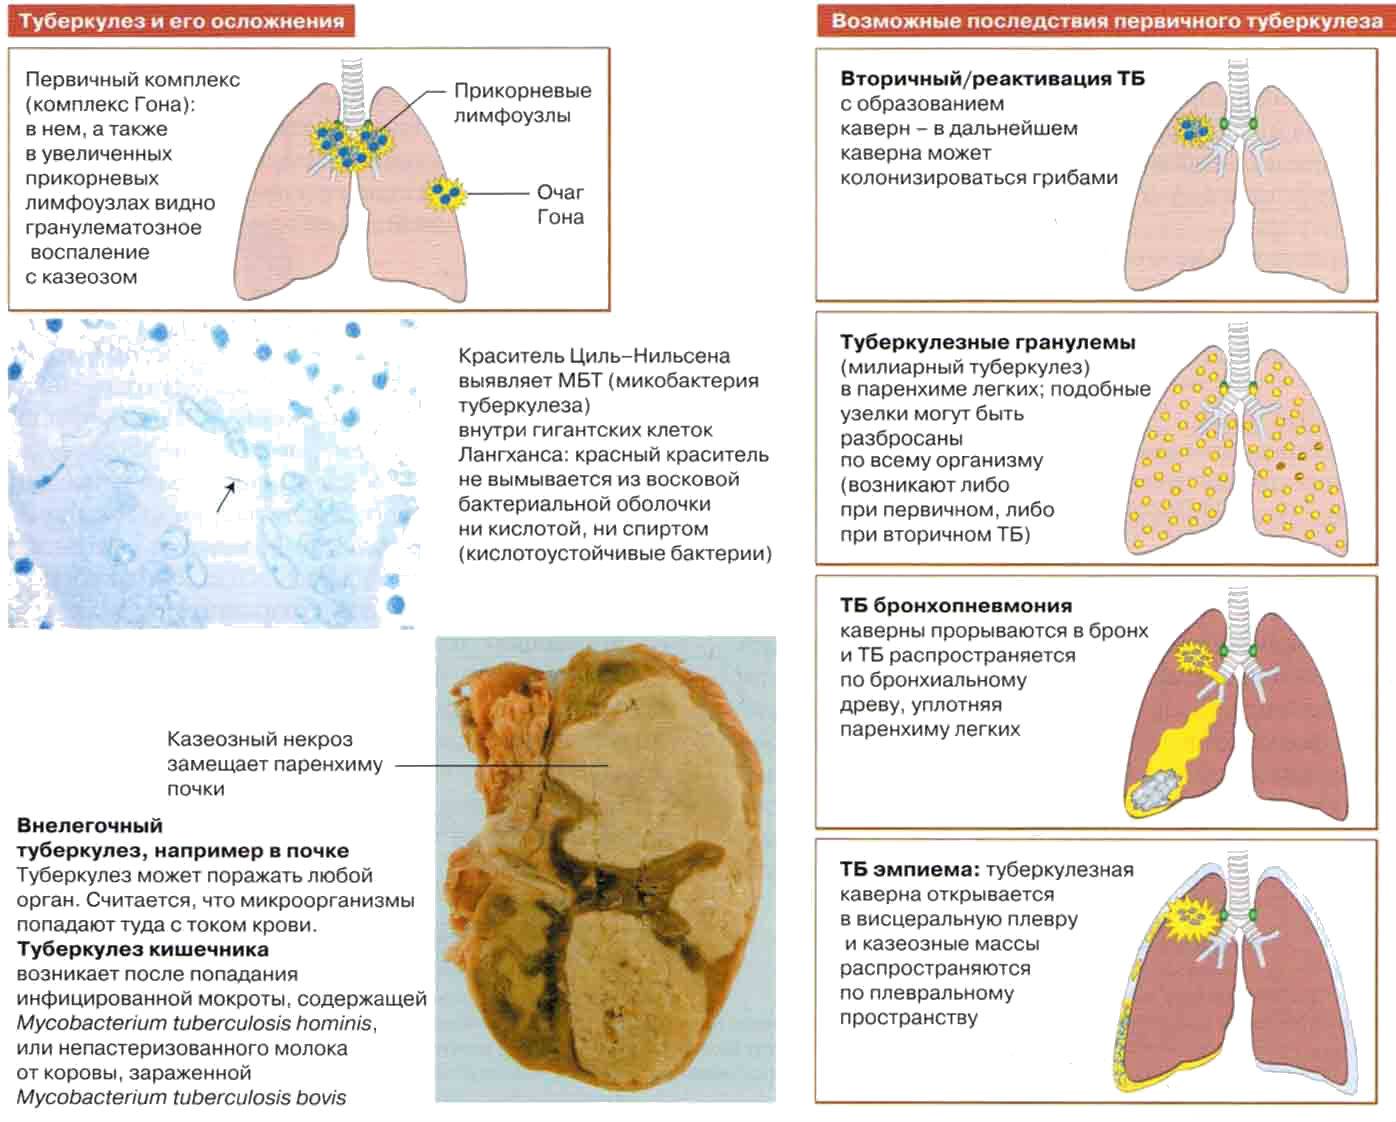 Посттуберкулезные изменения, осложнения и последствия перенесенного туберкулеза — стоптубик